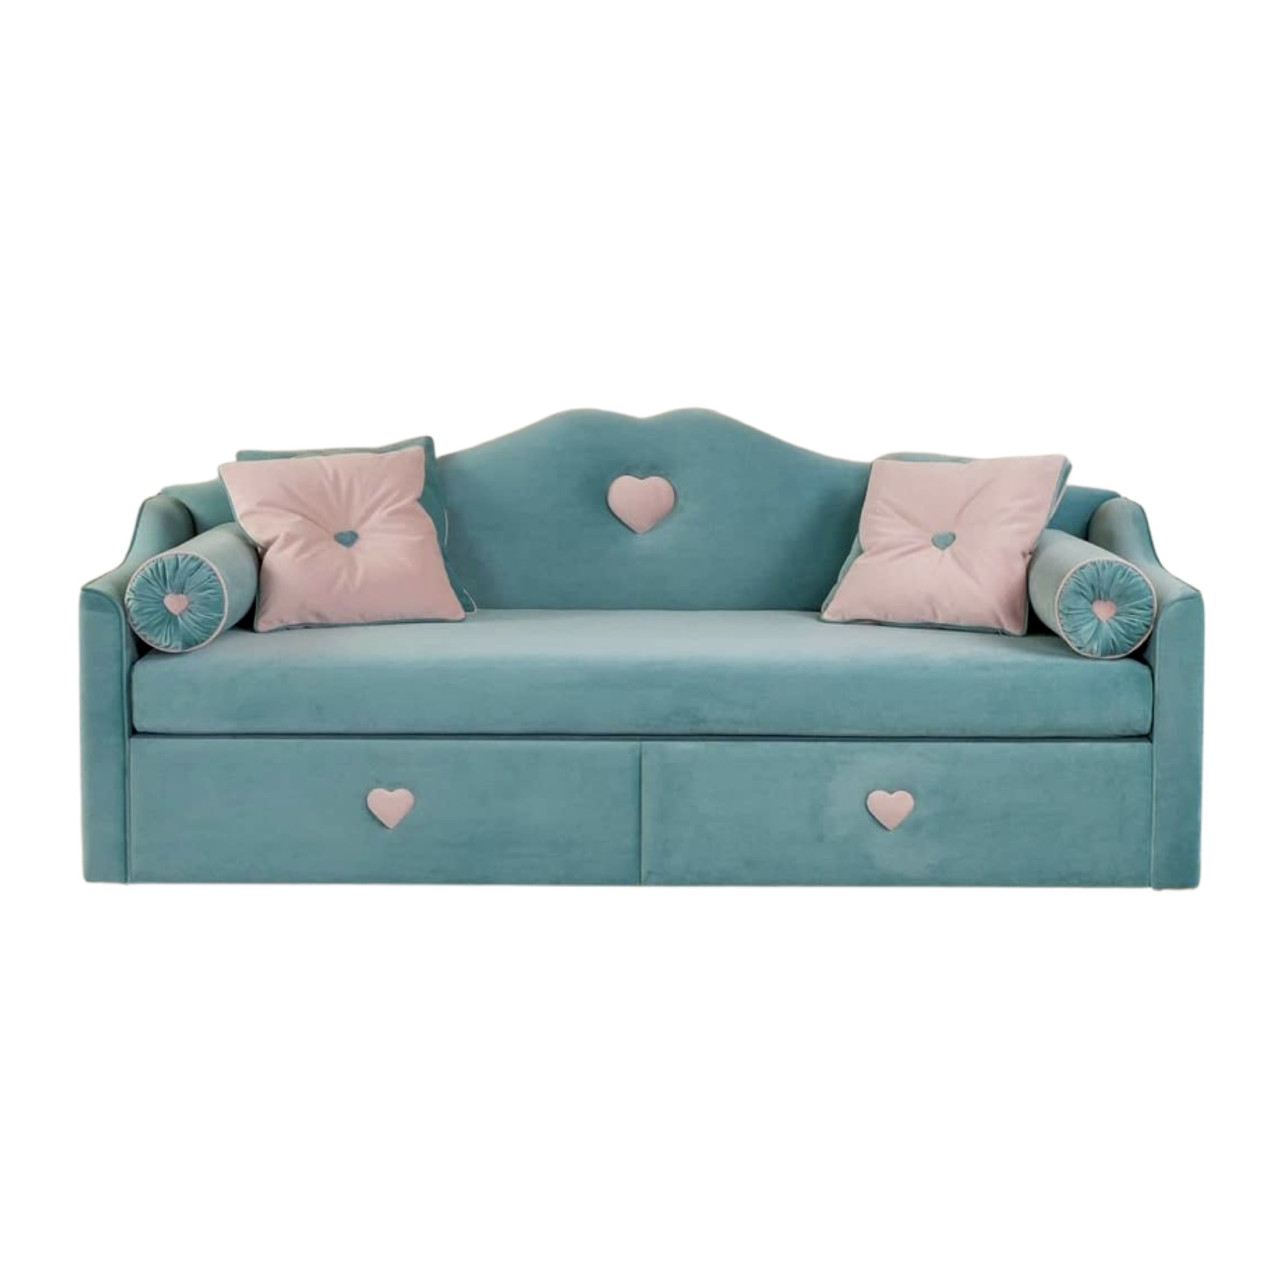 Дитячий диван для щоденного сну MeBelle BELVAL 90х190 з висувними ящиками, бірюзовий, світло-рожевий велюр